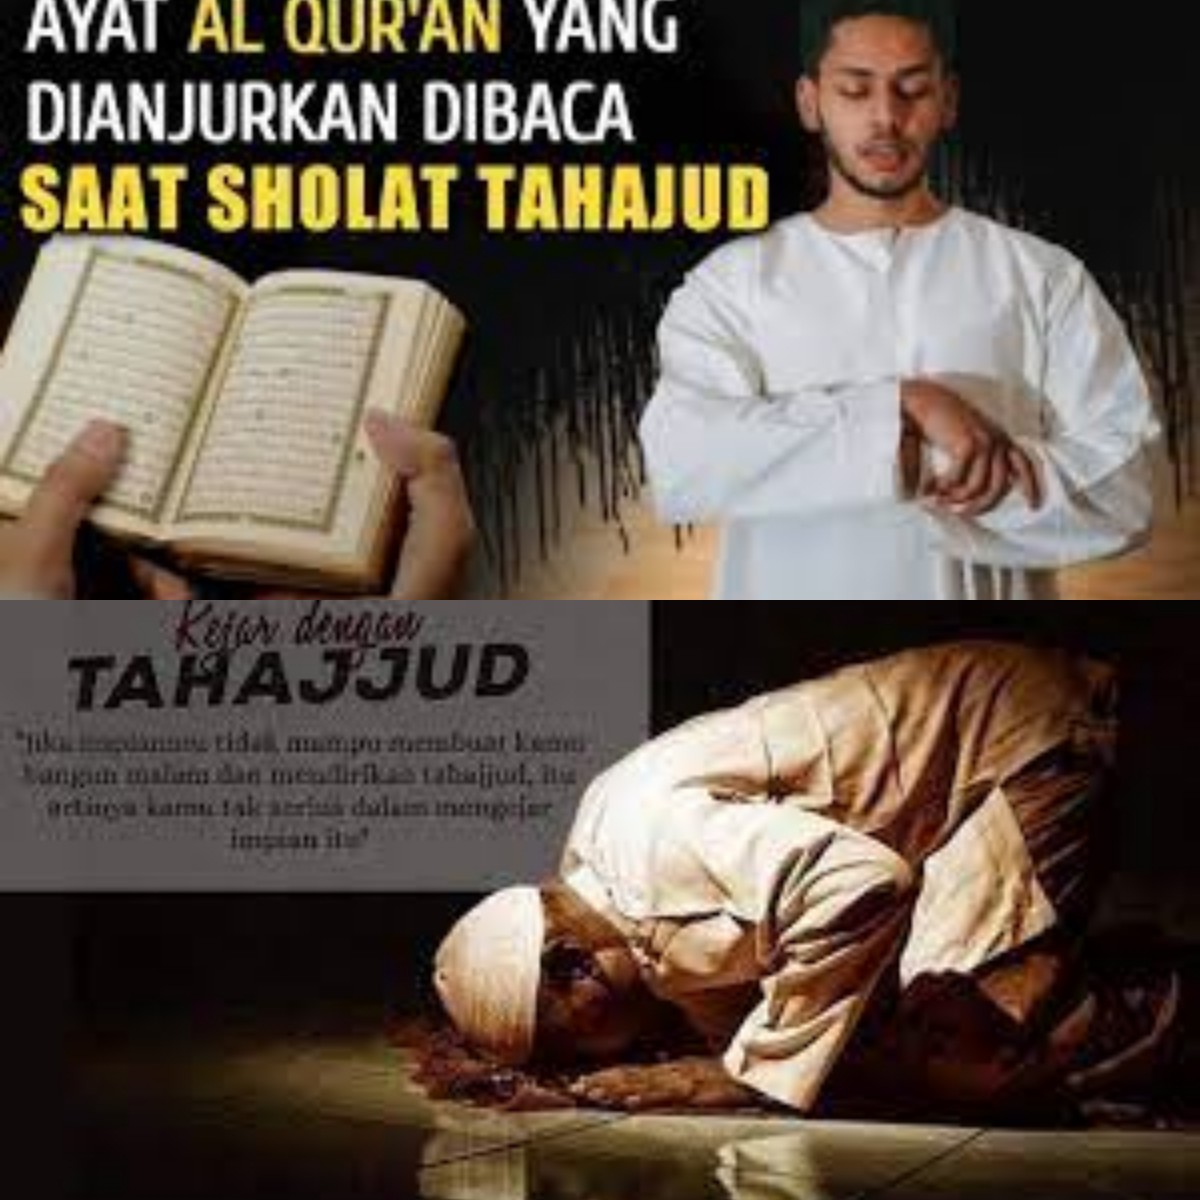 Rajin Sholat Tahajud di Bulan Ramadhan, Berikut 3 Surah yang Dianjurkan untuk Dibaca 